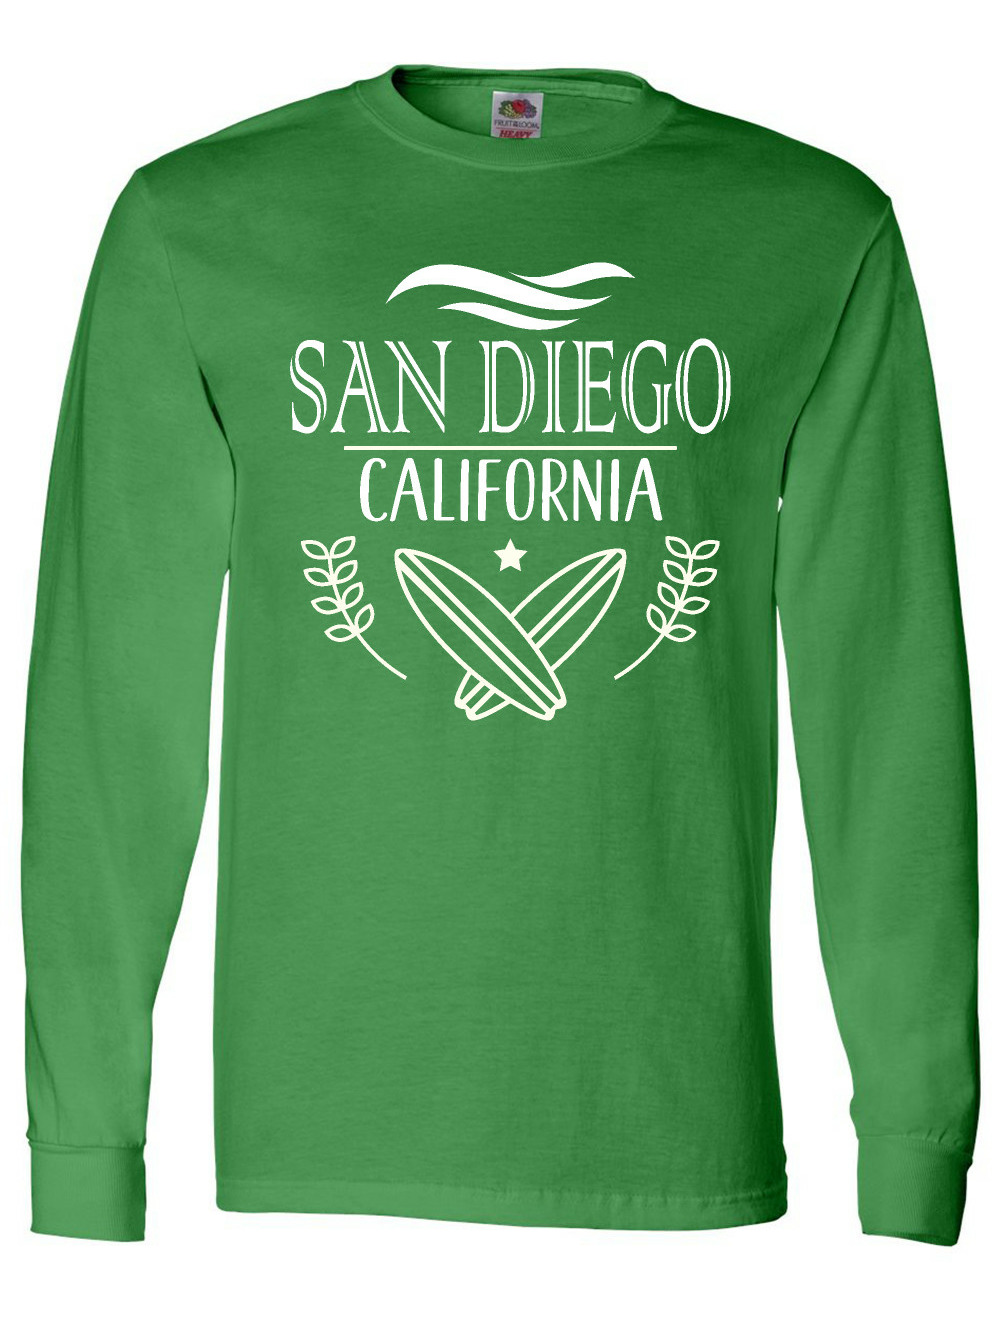 San Diego - California T-Shirt